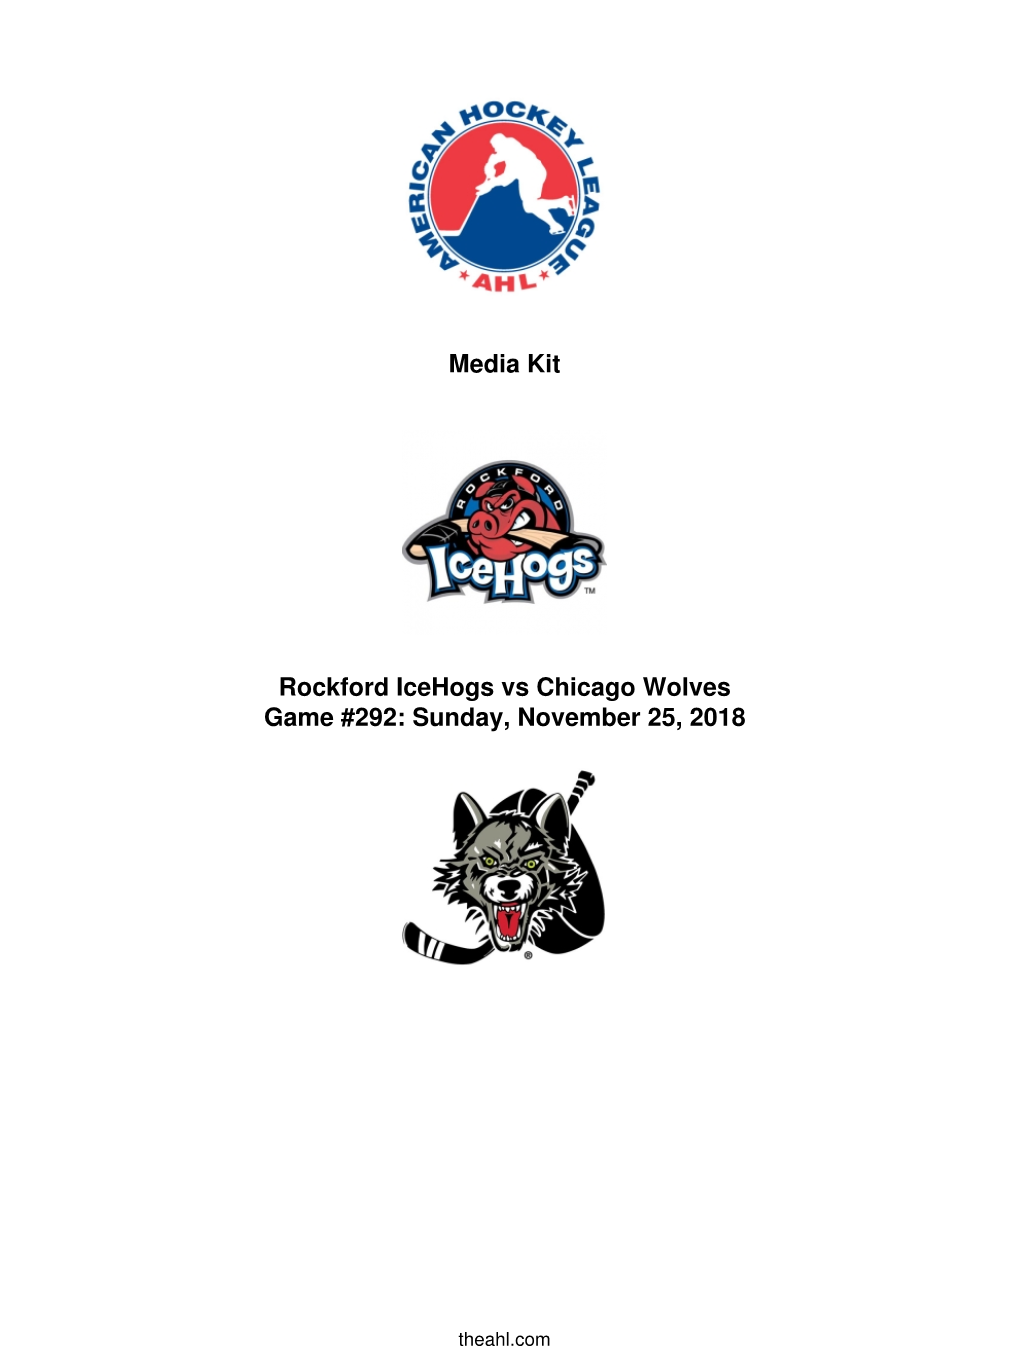 Media Kit Rockford Icehogs Vs Chicago Wolves Game #292